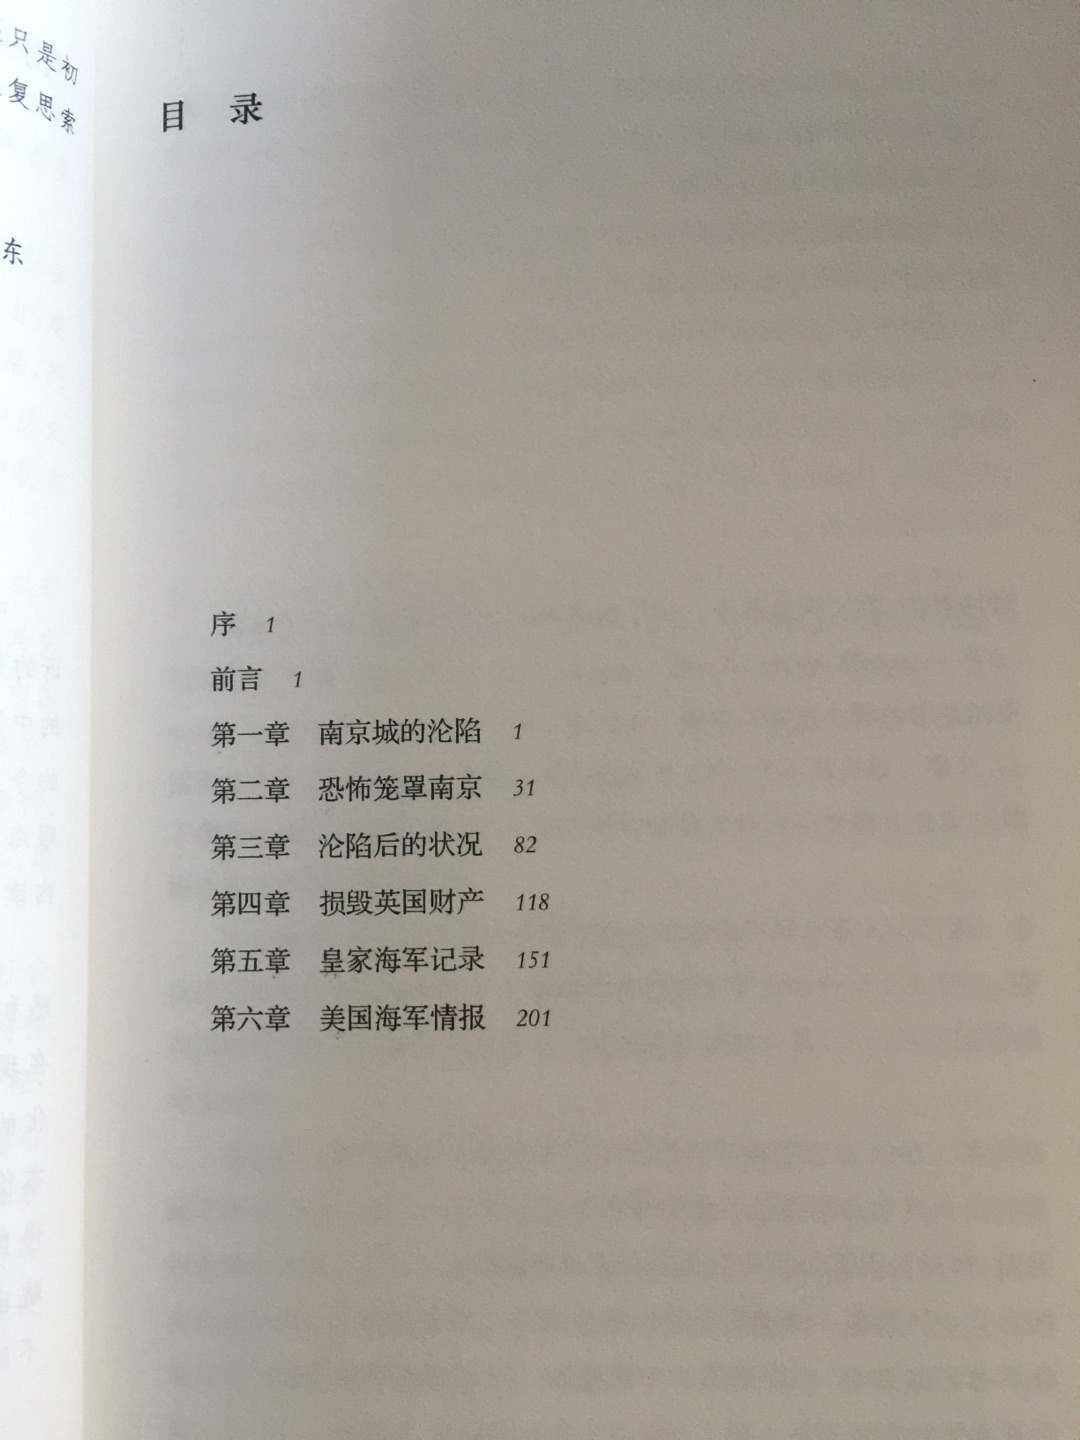 研究南京大屠杀的重要资料，揭发日本侵略者的罪行